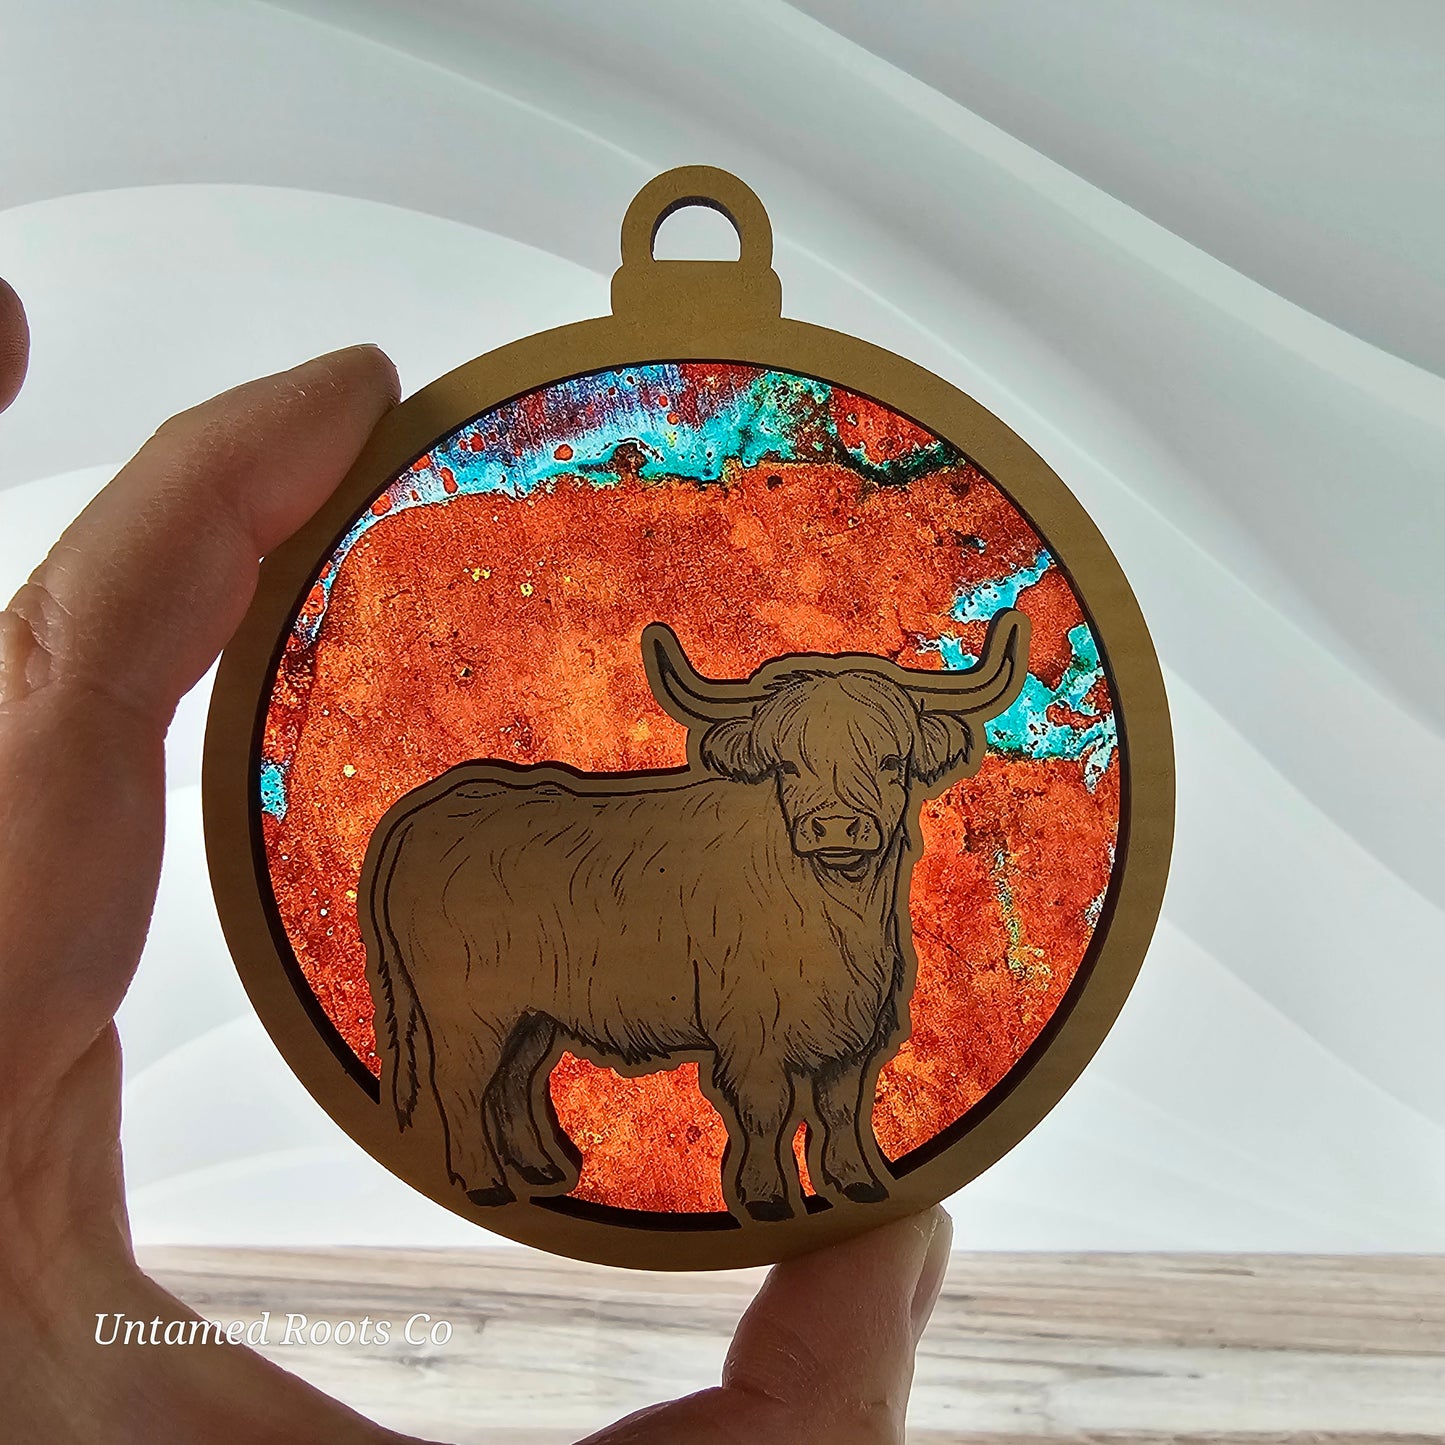 Highland Cow Suncatcher Ornament - Translucent Antique Copper